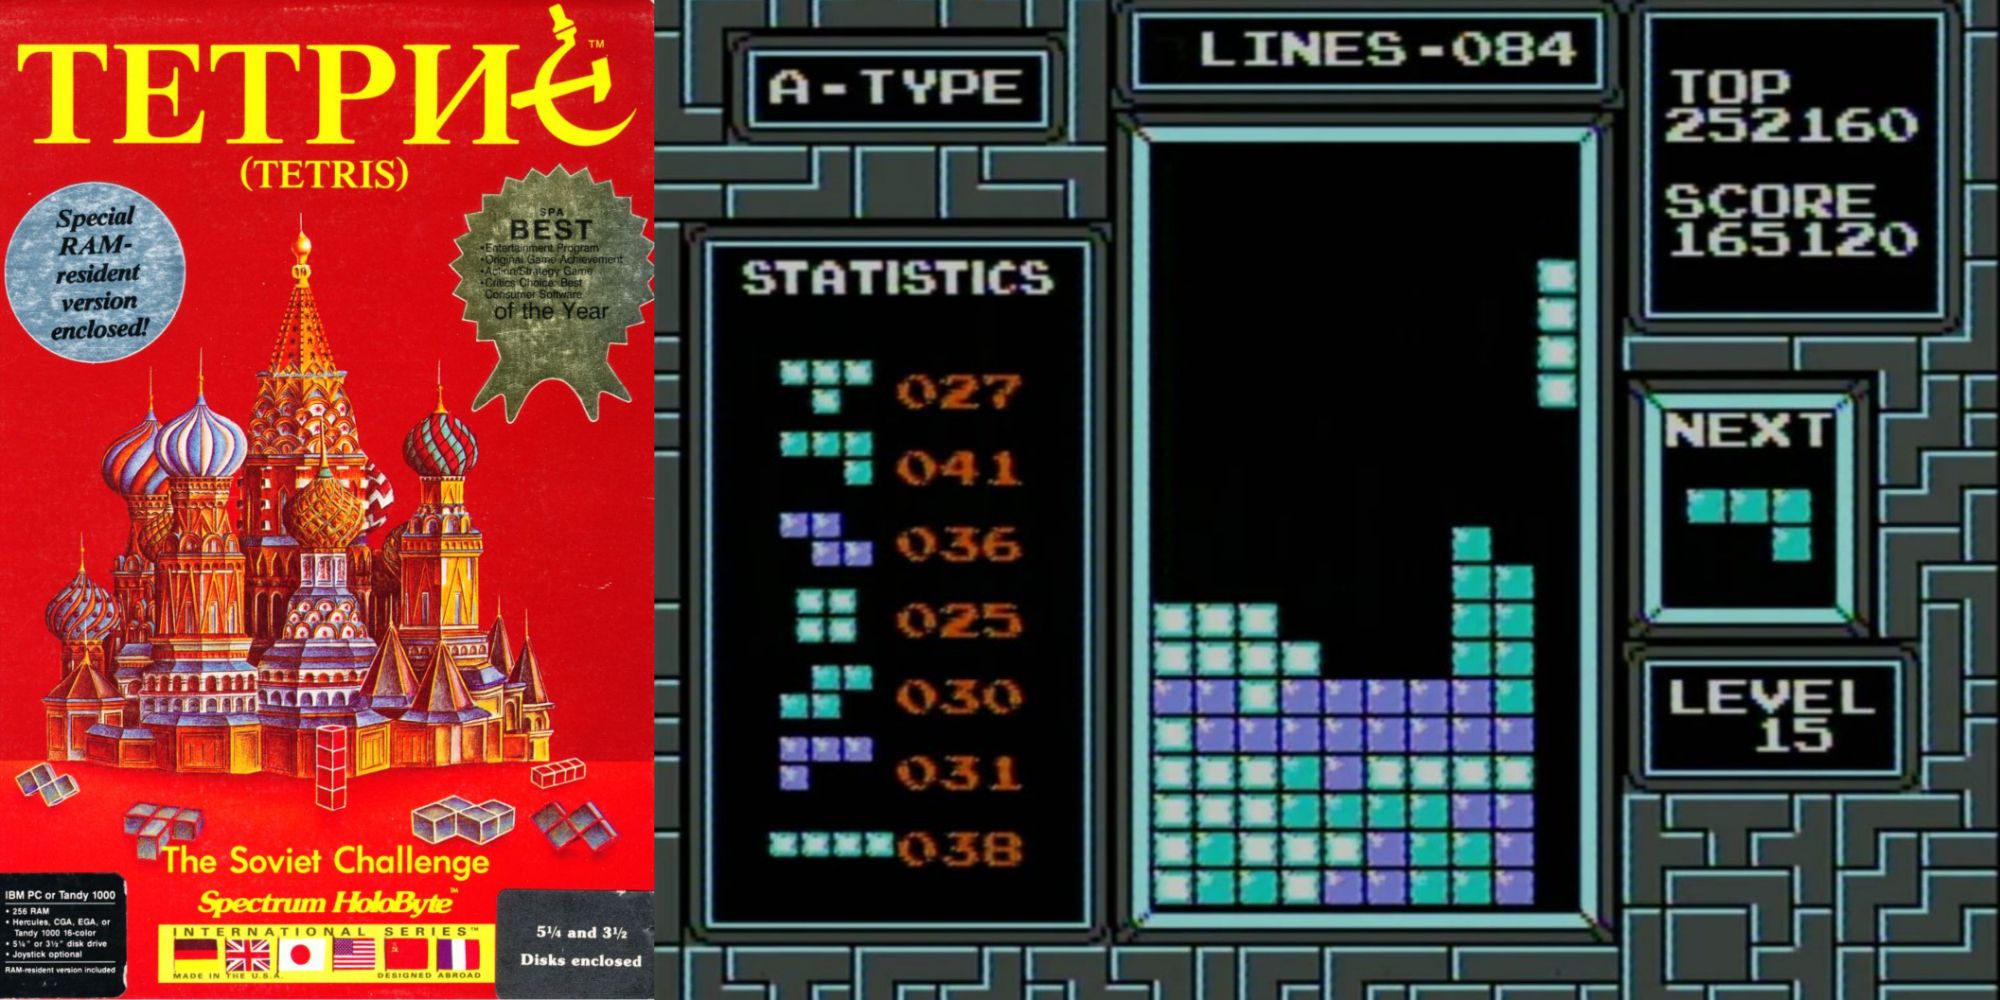 The original Tetris cover art and a screenshot of the game